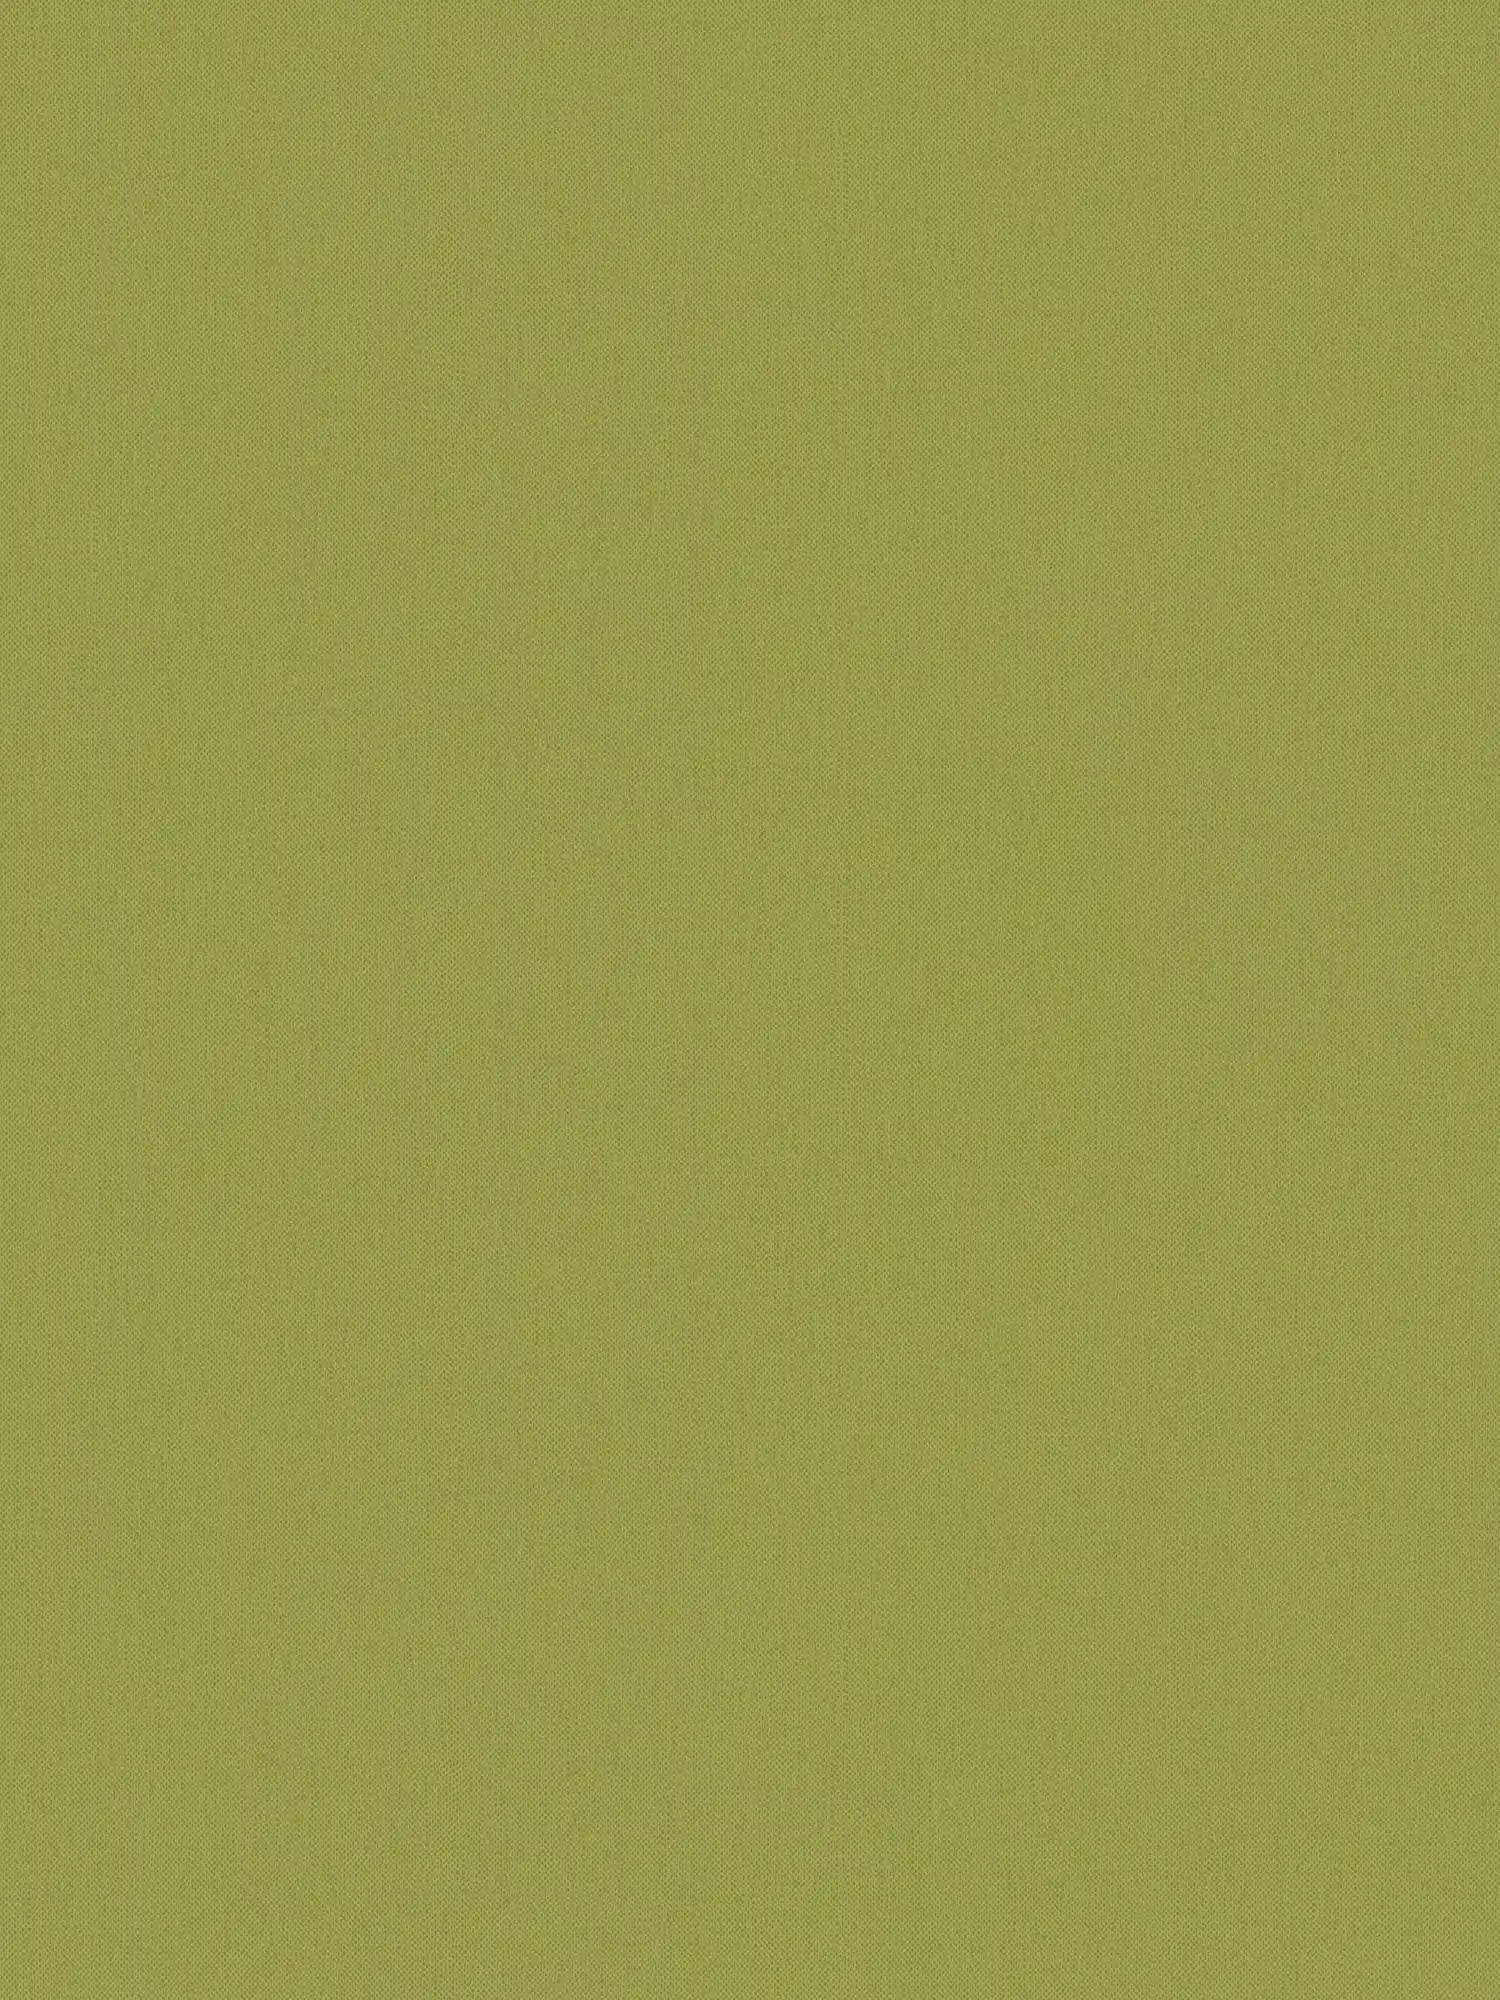 Papel pintado de color verde oliva con aspecto de lino y textura - verde, amarillo
